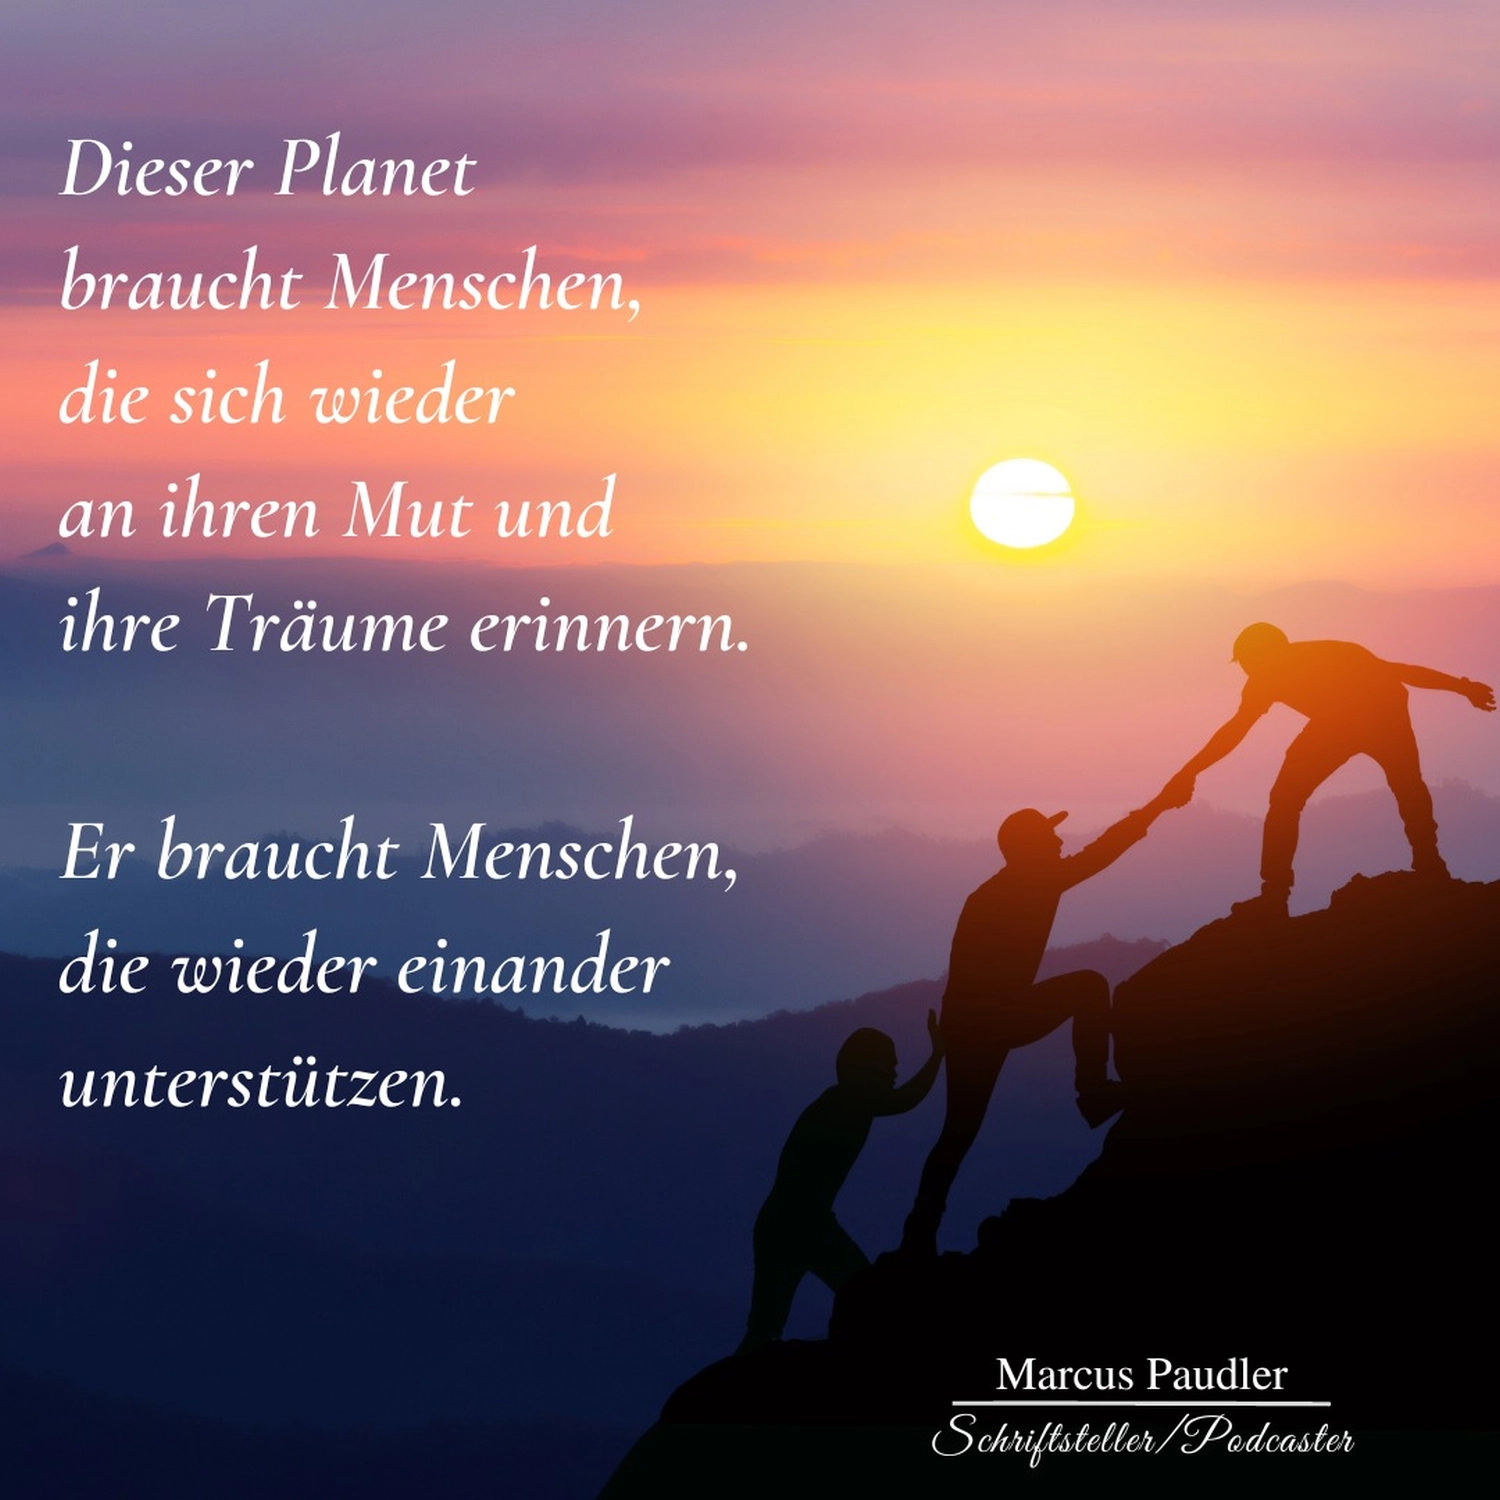 Dieser Planet-Poesie von Marcus Paudler